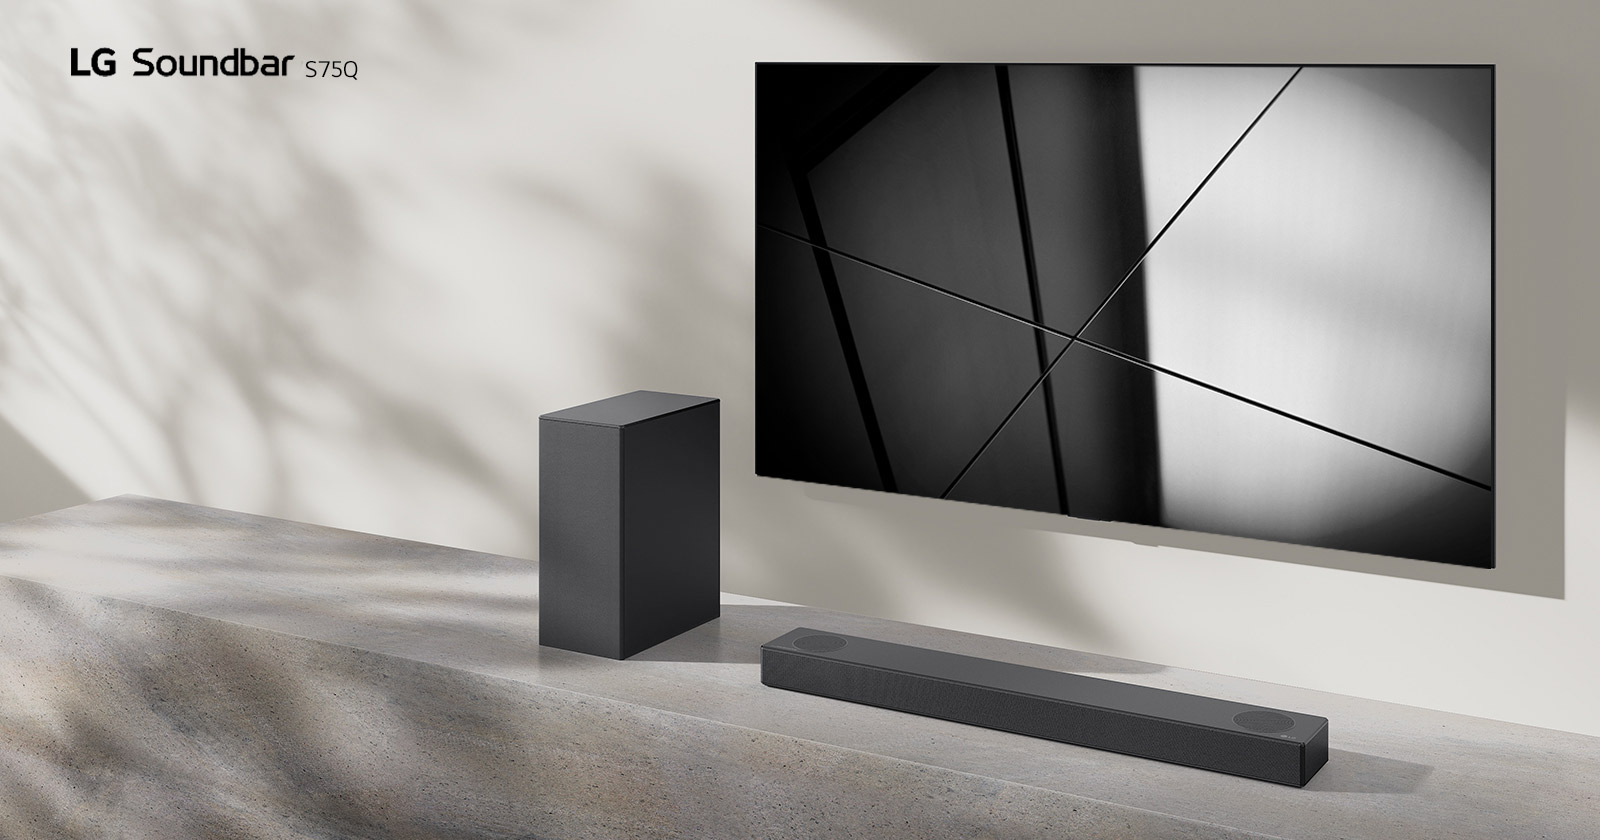 Το LG sound bar S75Q και μια τηλεόραση της LG τοποθετημένα μαζί στο σαλόνι. Η τηλεόραση είναι αναμμένη και εμφανίζει ασπρόμαυρη εικόνα.